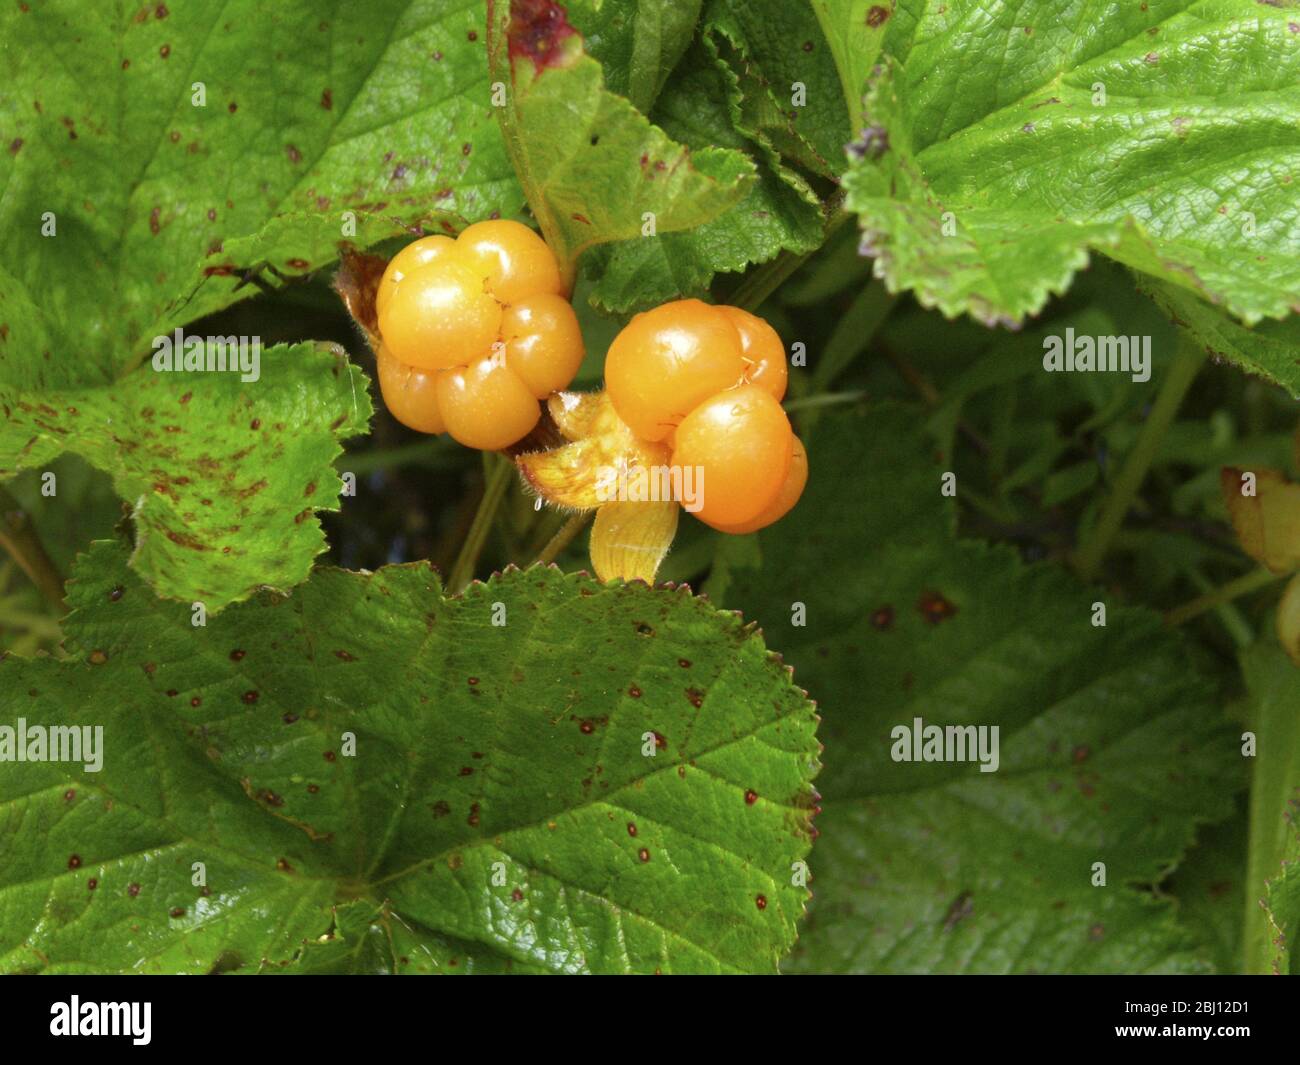 Il bacche nuvoloso, Rubus chamaemorus L., Rosaceae, è un piccolo brambone erbaceo comune alle torbiere nell'emisfero settentrionale. Il bacca ha un m forte Foto Stock